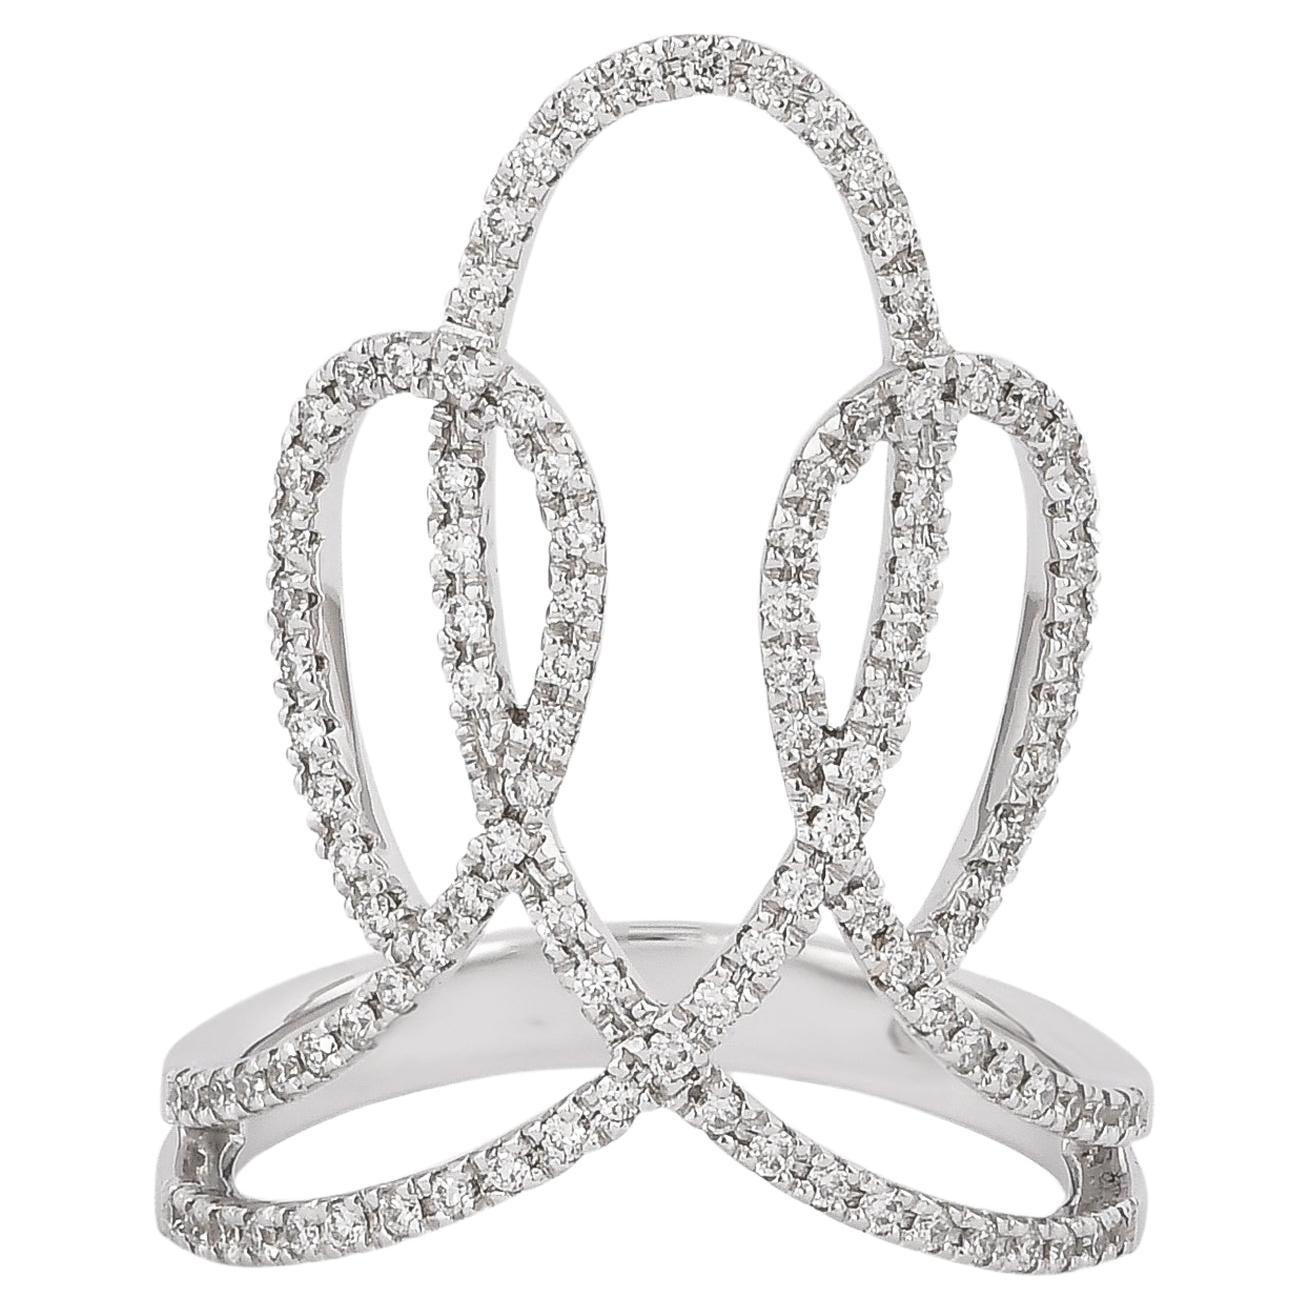 0.447 Carat Diamond Ring in 18 Karat White Gold For Sale